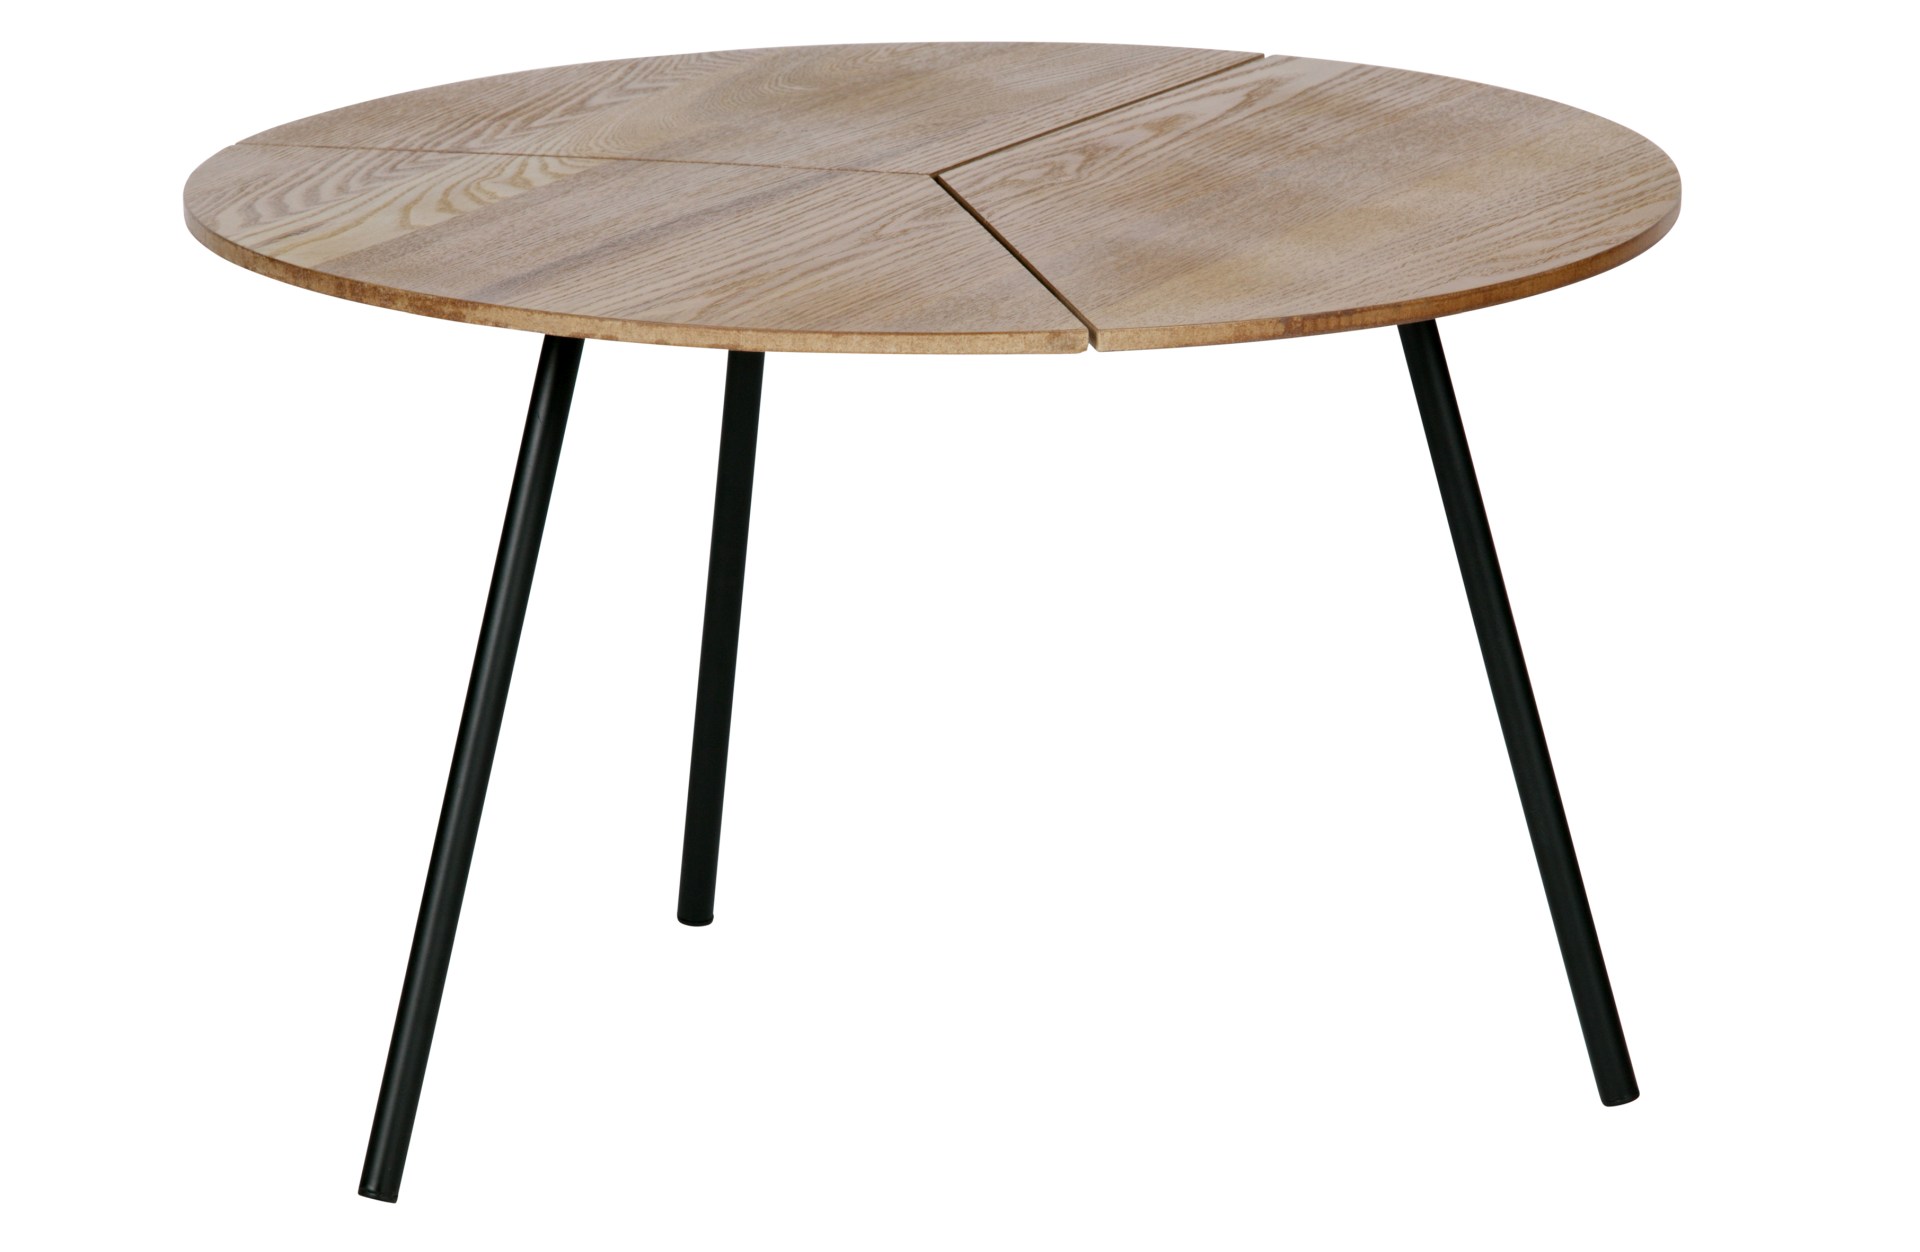 Der Couchtisch Rodi überzeugt mit seinem modernen Design. Die Tischplatte wurde aus MDF Holz gefertigt, welche natürlich gehalten wurde. Das Gestell ist aus Metall, welches einen schwarzen Farbton hat.